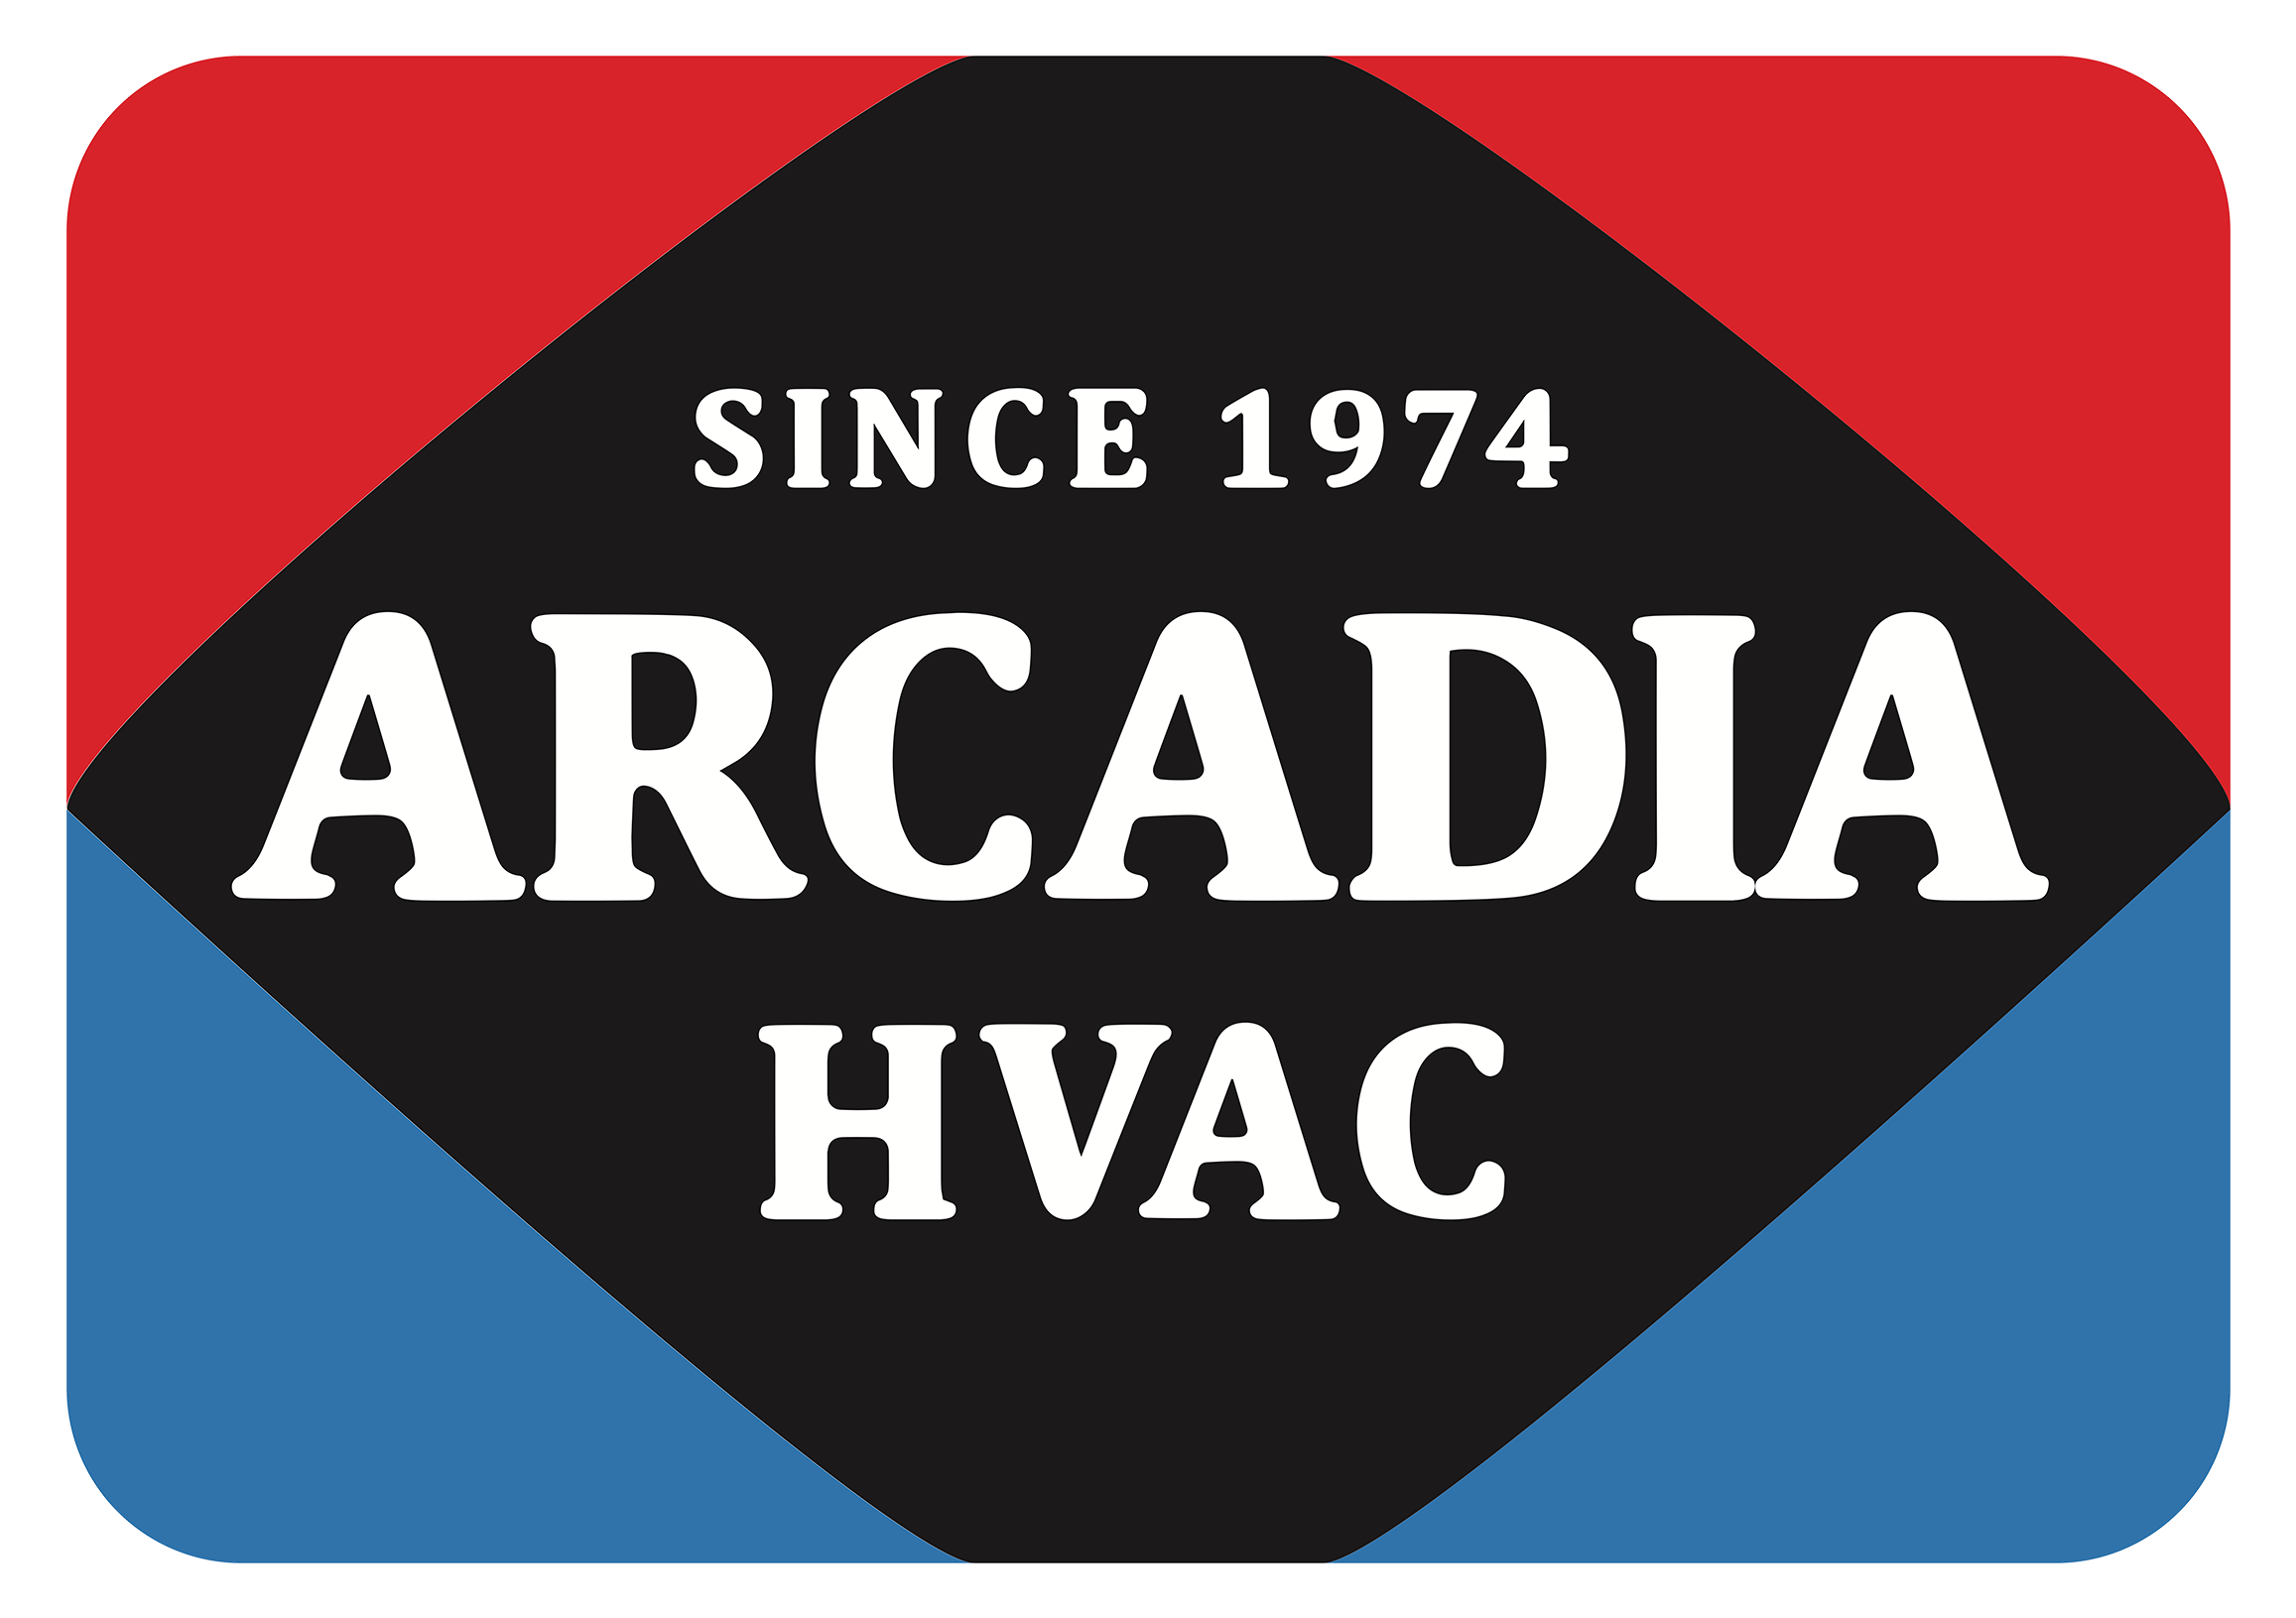 Arcadia HVAC